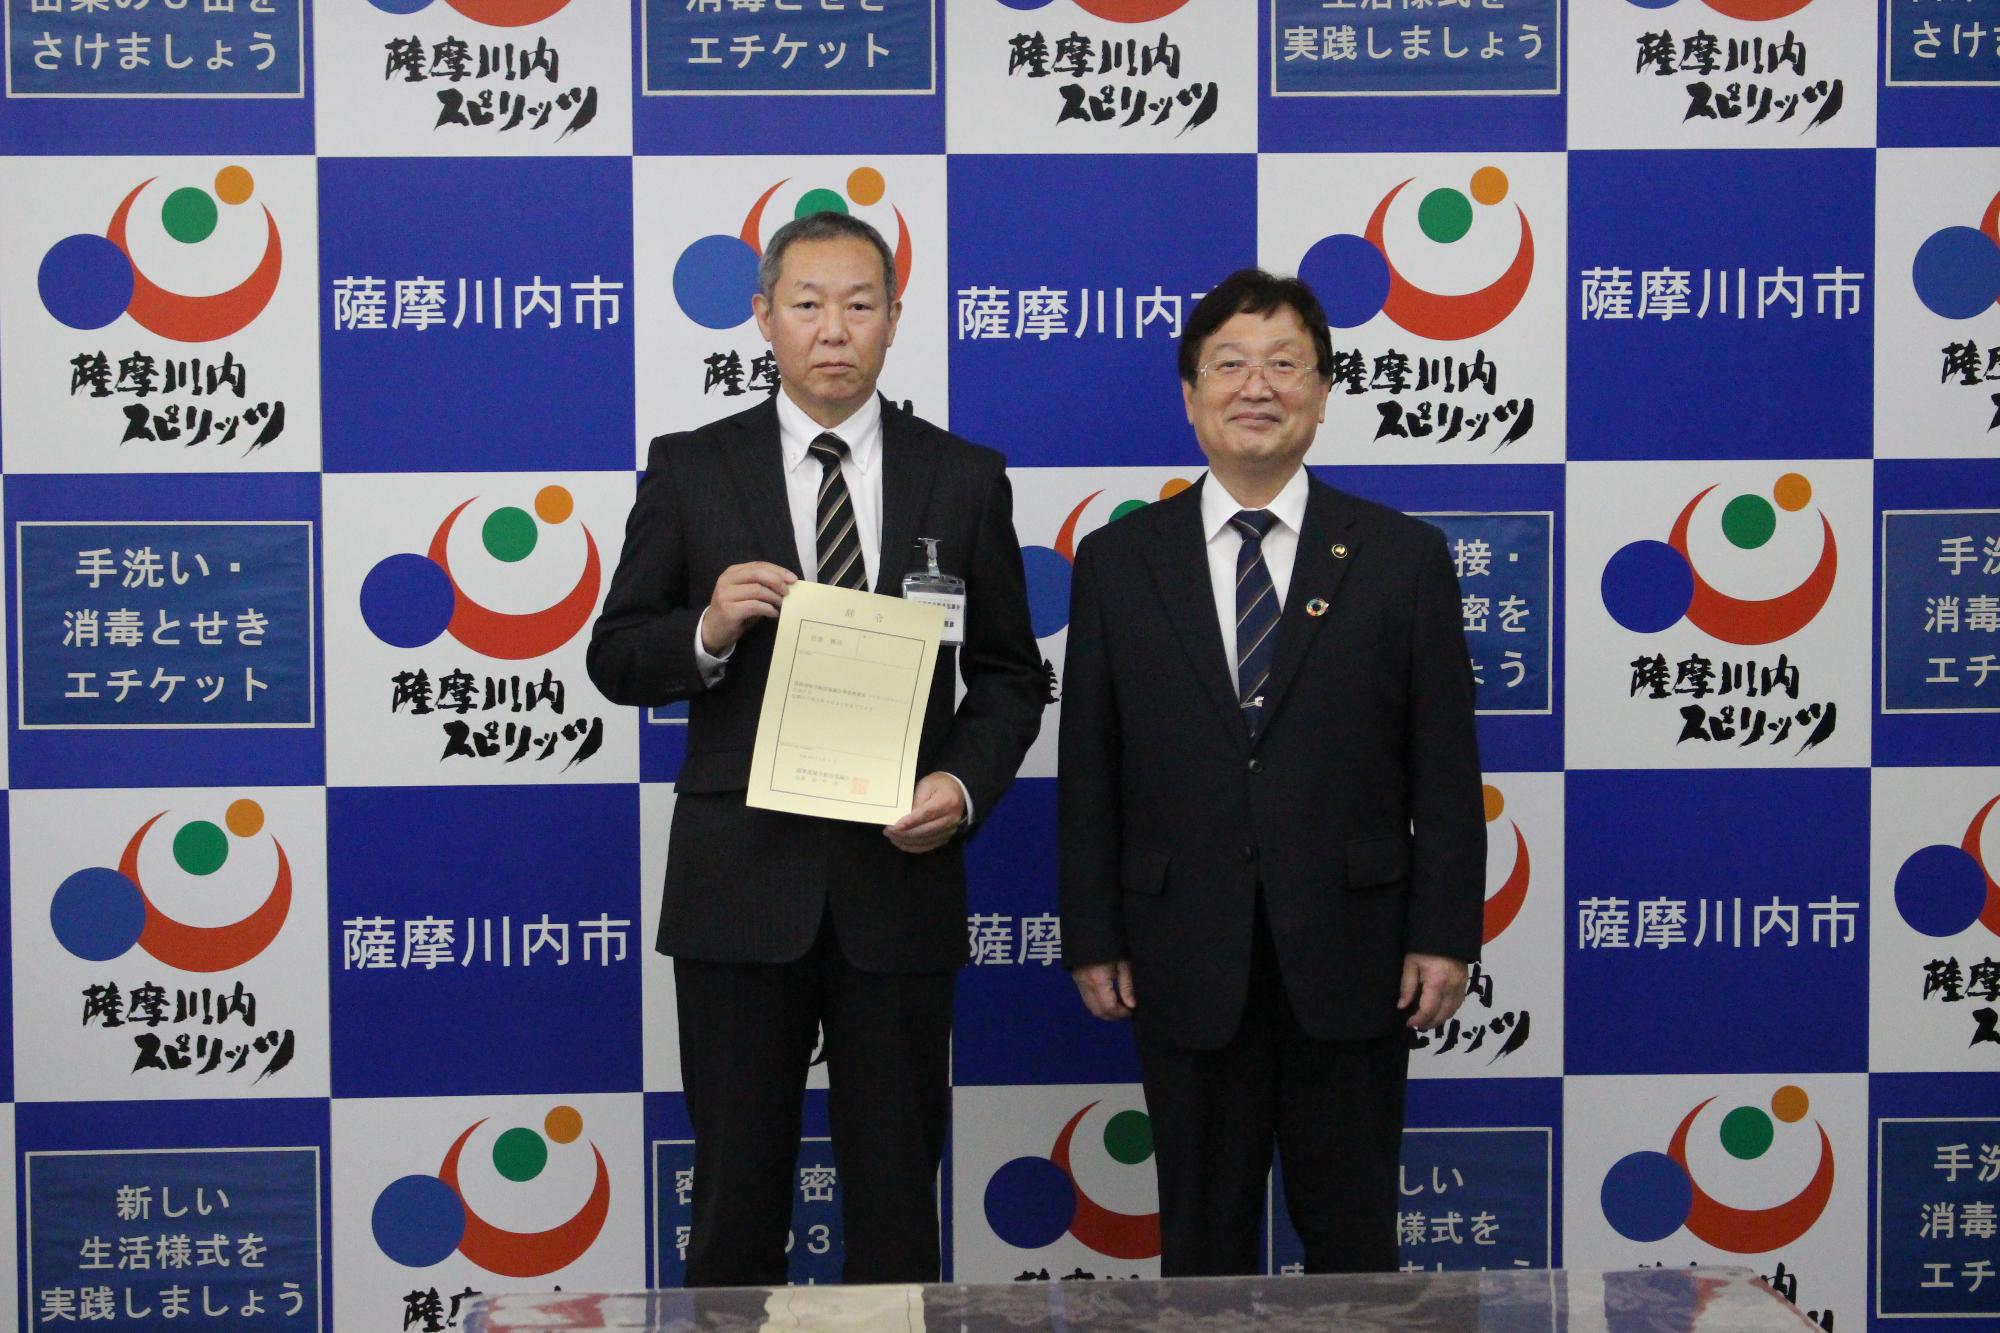 薩摩川内市等と書いてある壁紙の前で、二人のスーツ姿の男性が立っている写真